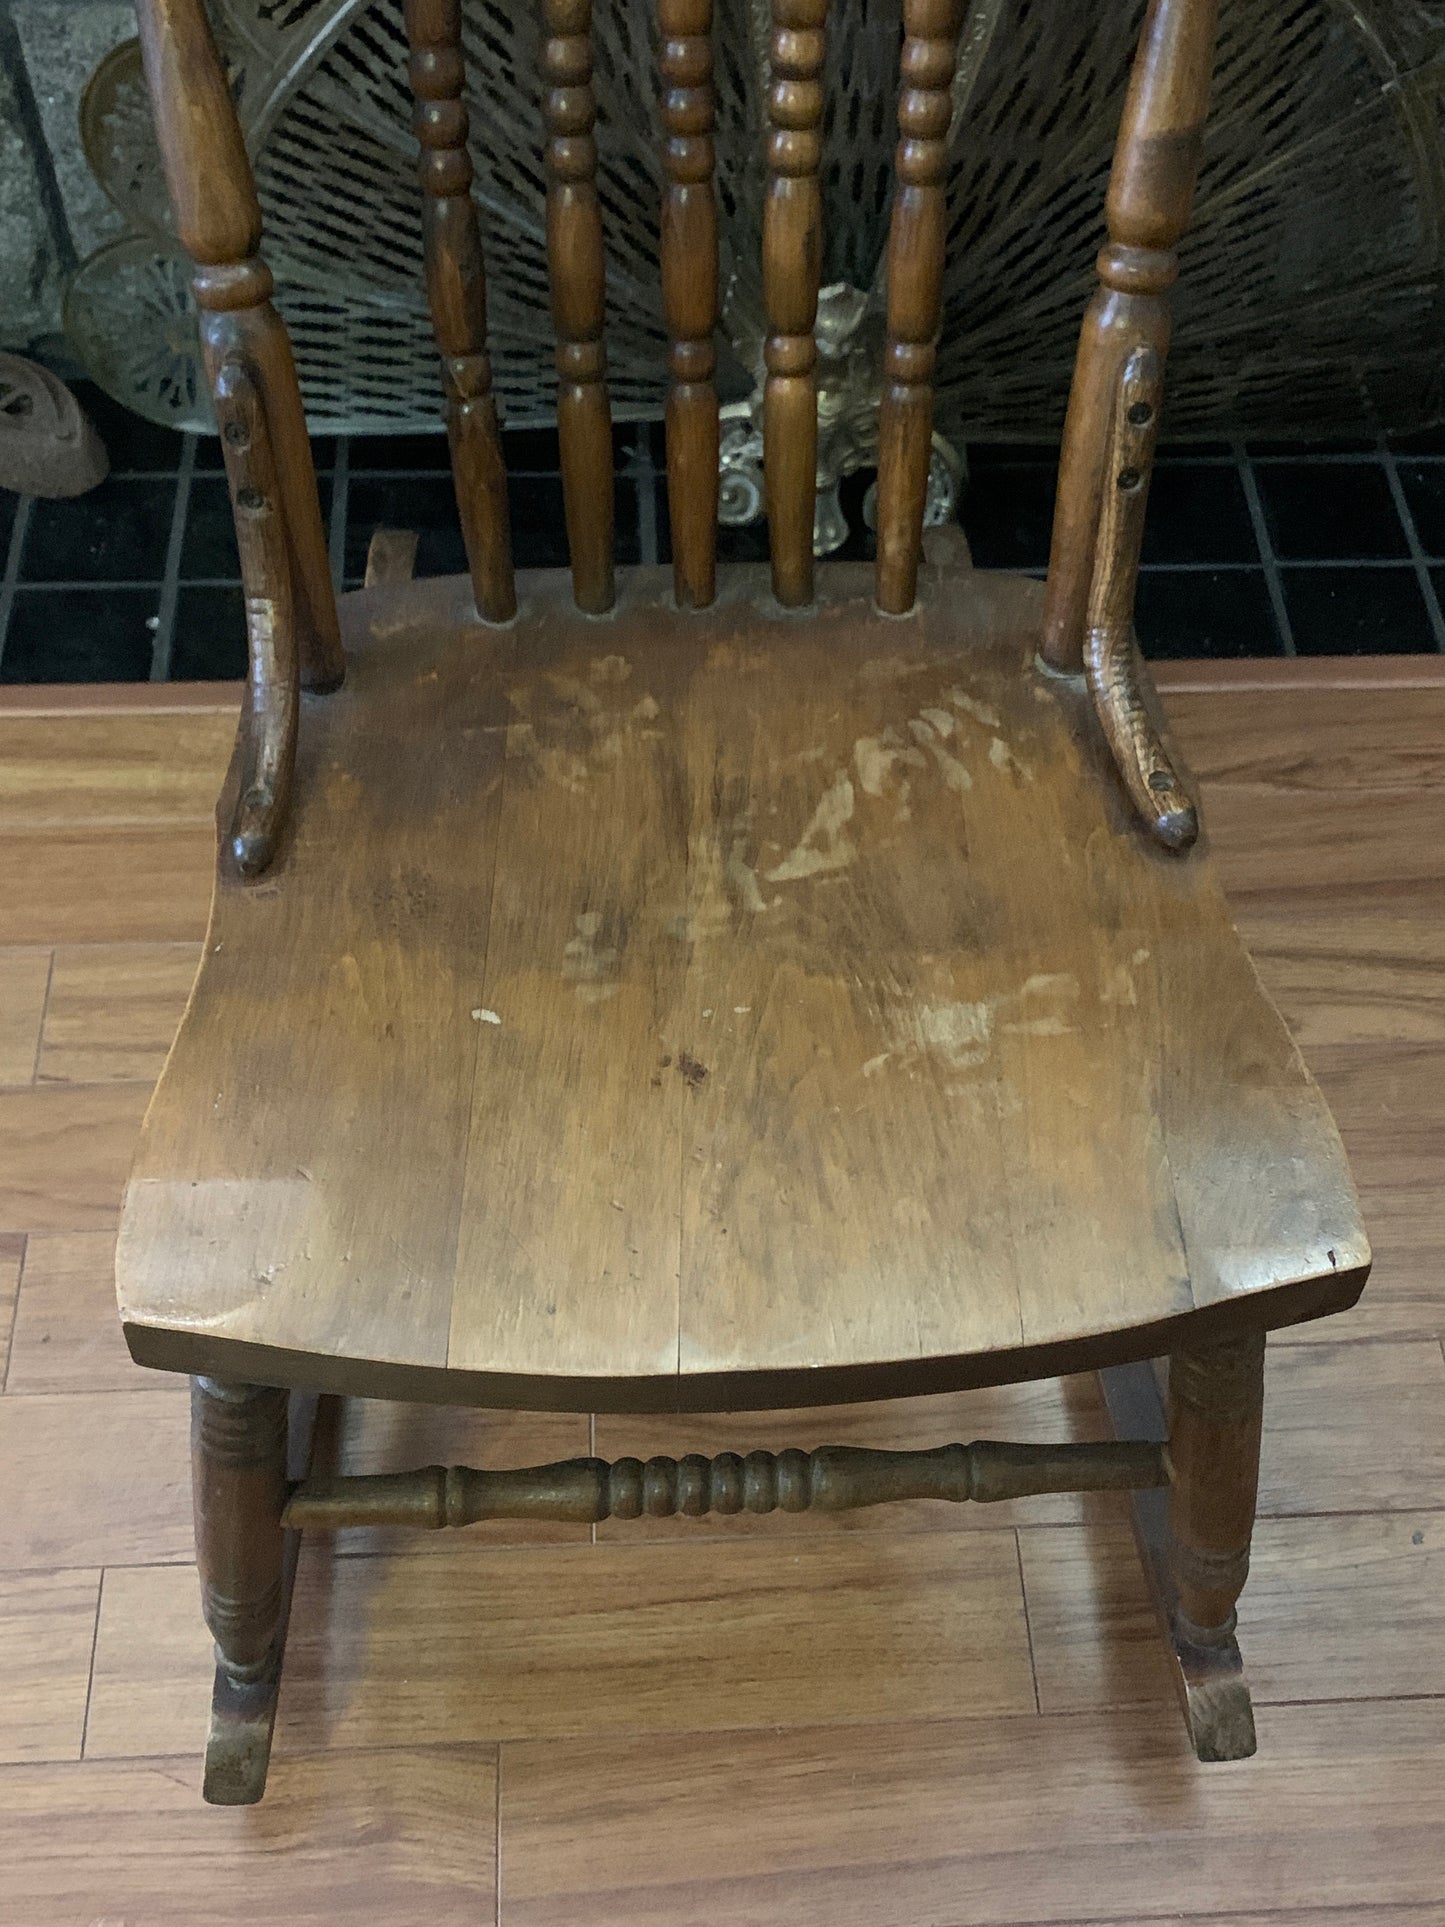 Antique Press Back Nursing Rocker Vintage Wooden Rocking Chair